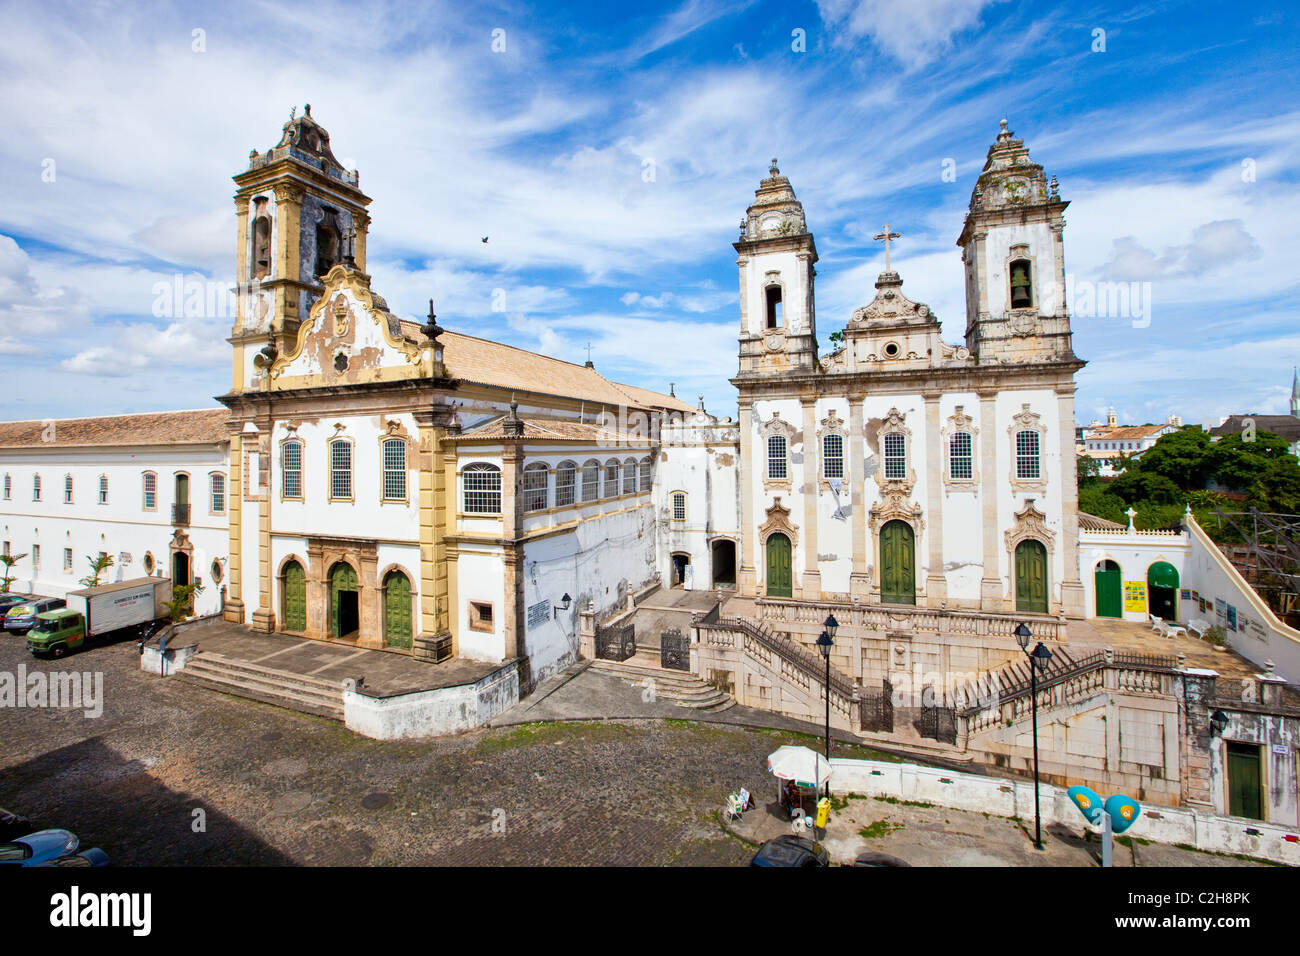 Igreja da Ordem Terceira do Carmo and the Pelourinho, old Salvador, Brazil Stock Photo